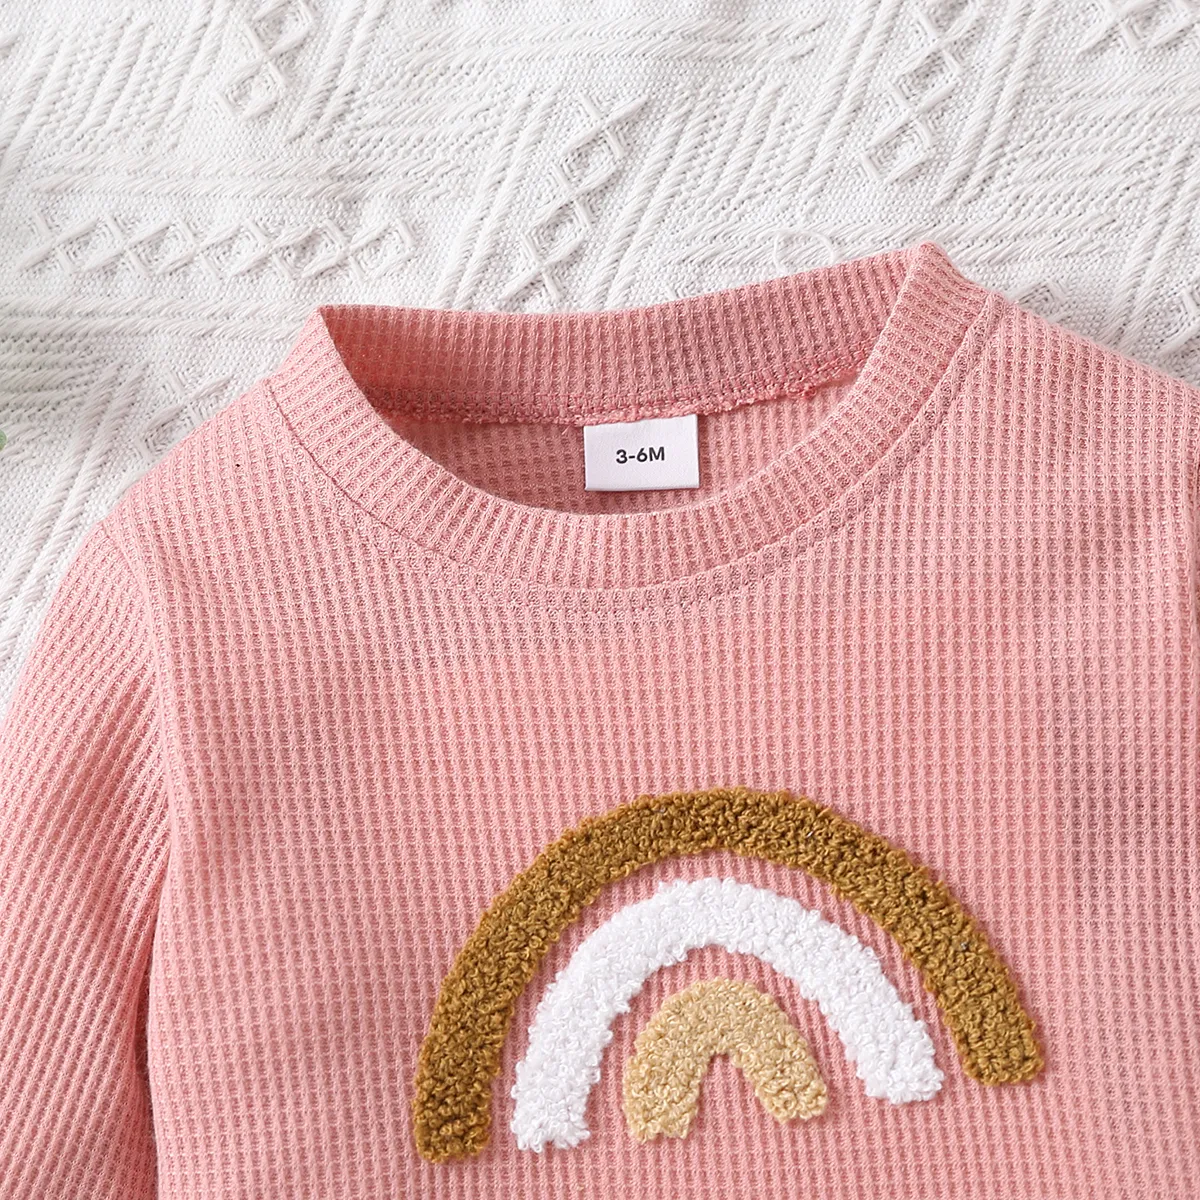 Baby Boy/Girl Letter/Rainbow Design Long-sleeve Sweatshirts Pink big image 1